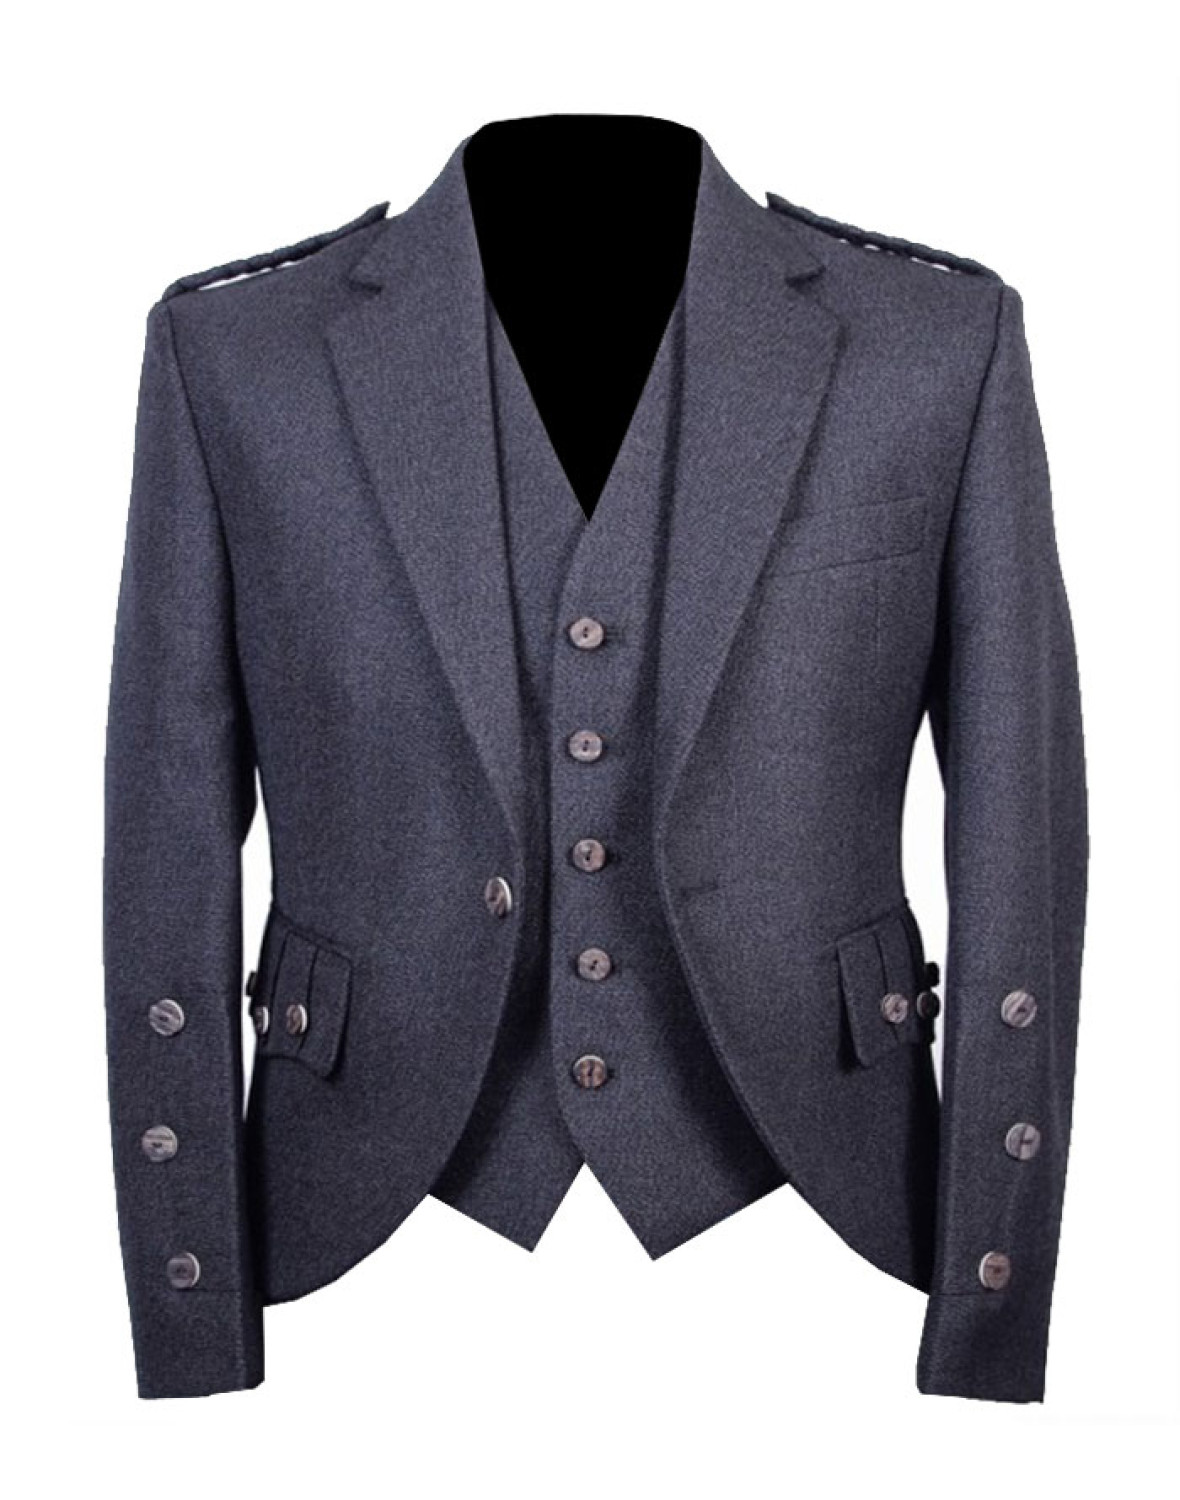 Harris Tweed Jackets & Waistcoats | Asbury & Pell